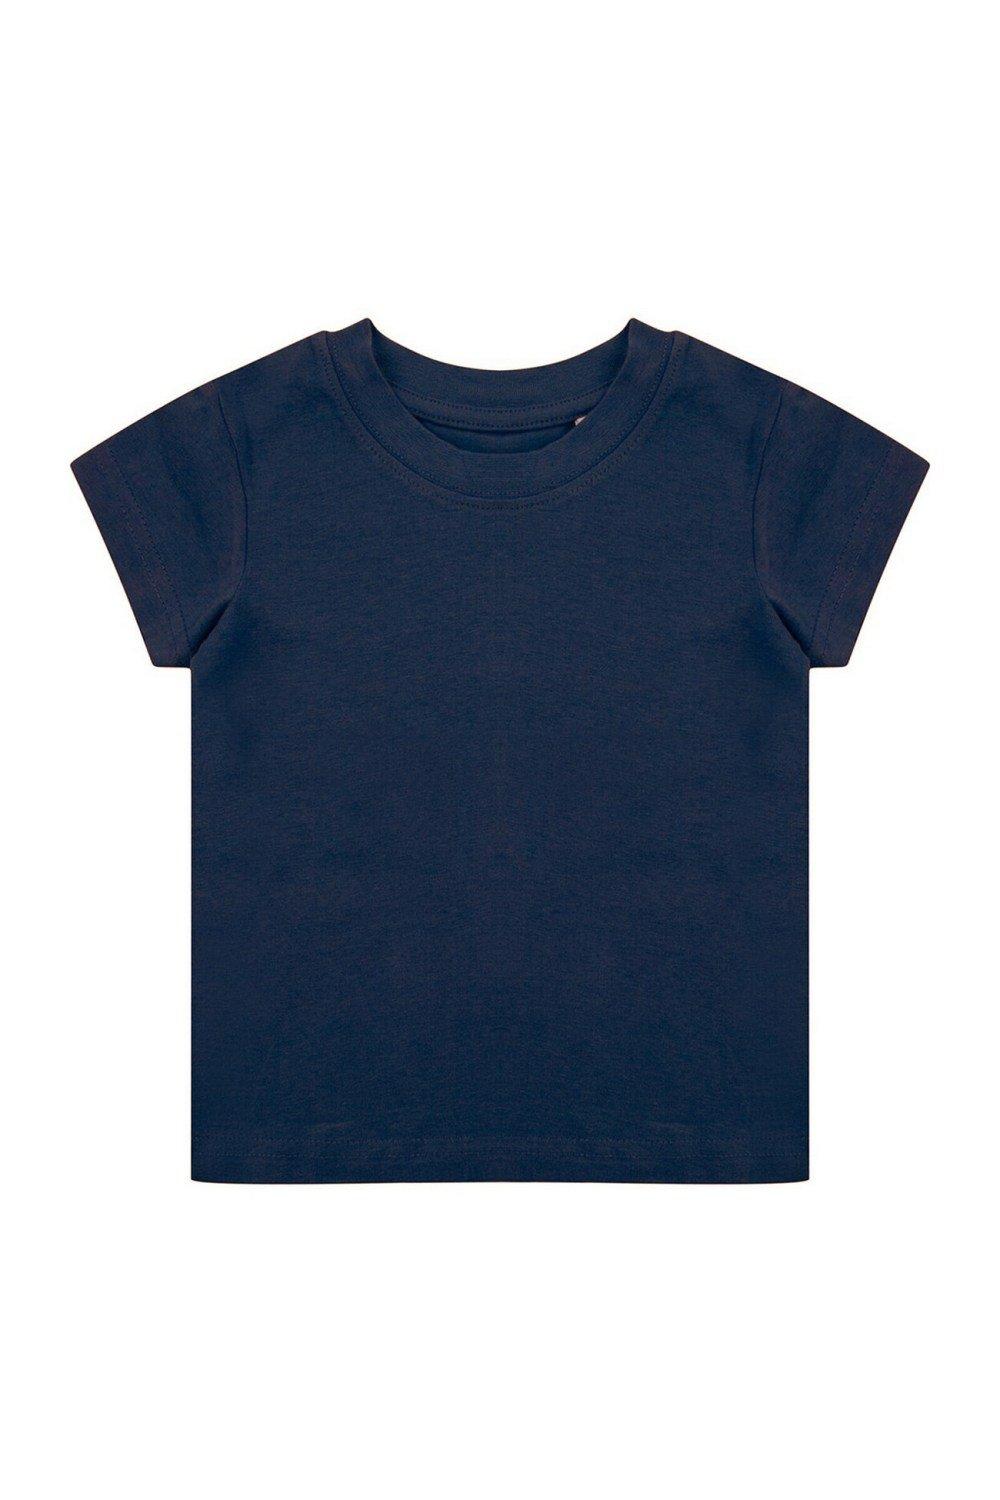 Органическая футболка Larkwood, темно-синий органическая футболка larkwood синий